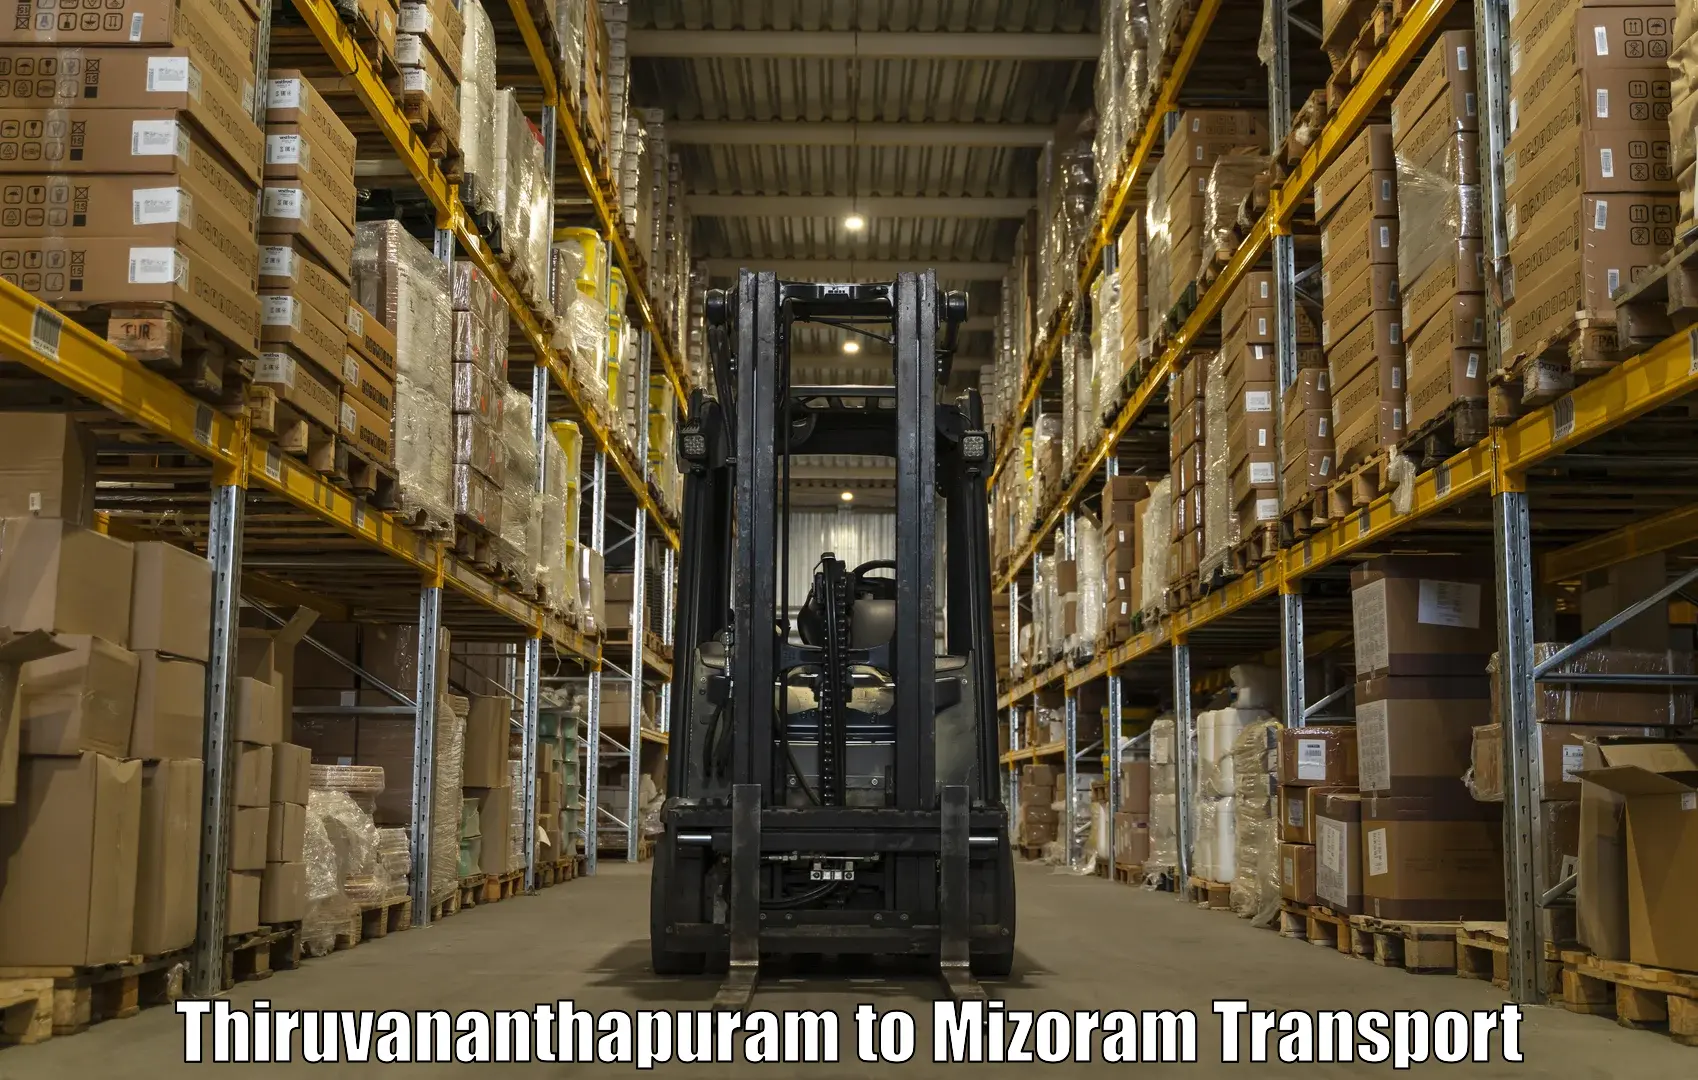 Intercity transport Thiruvananthapuram to Aizawl